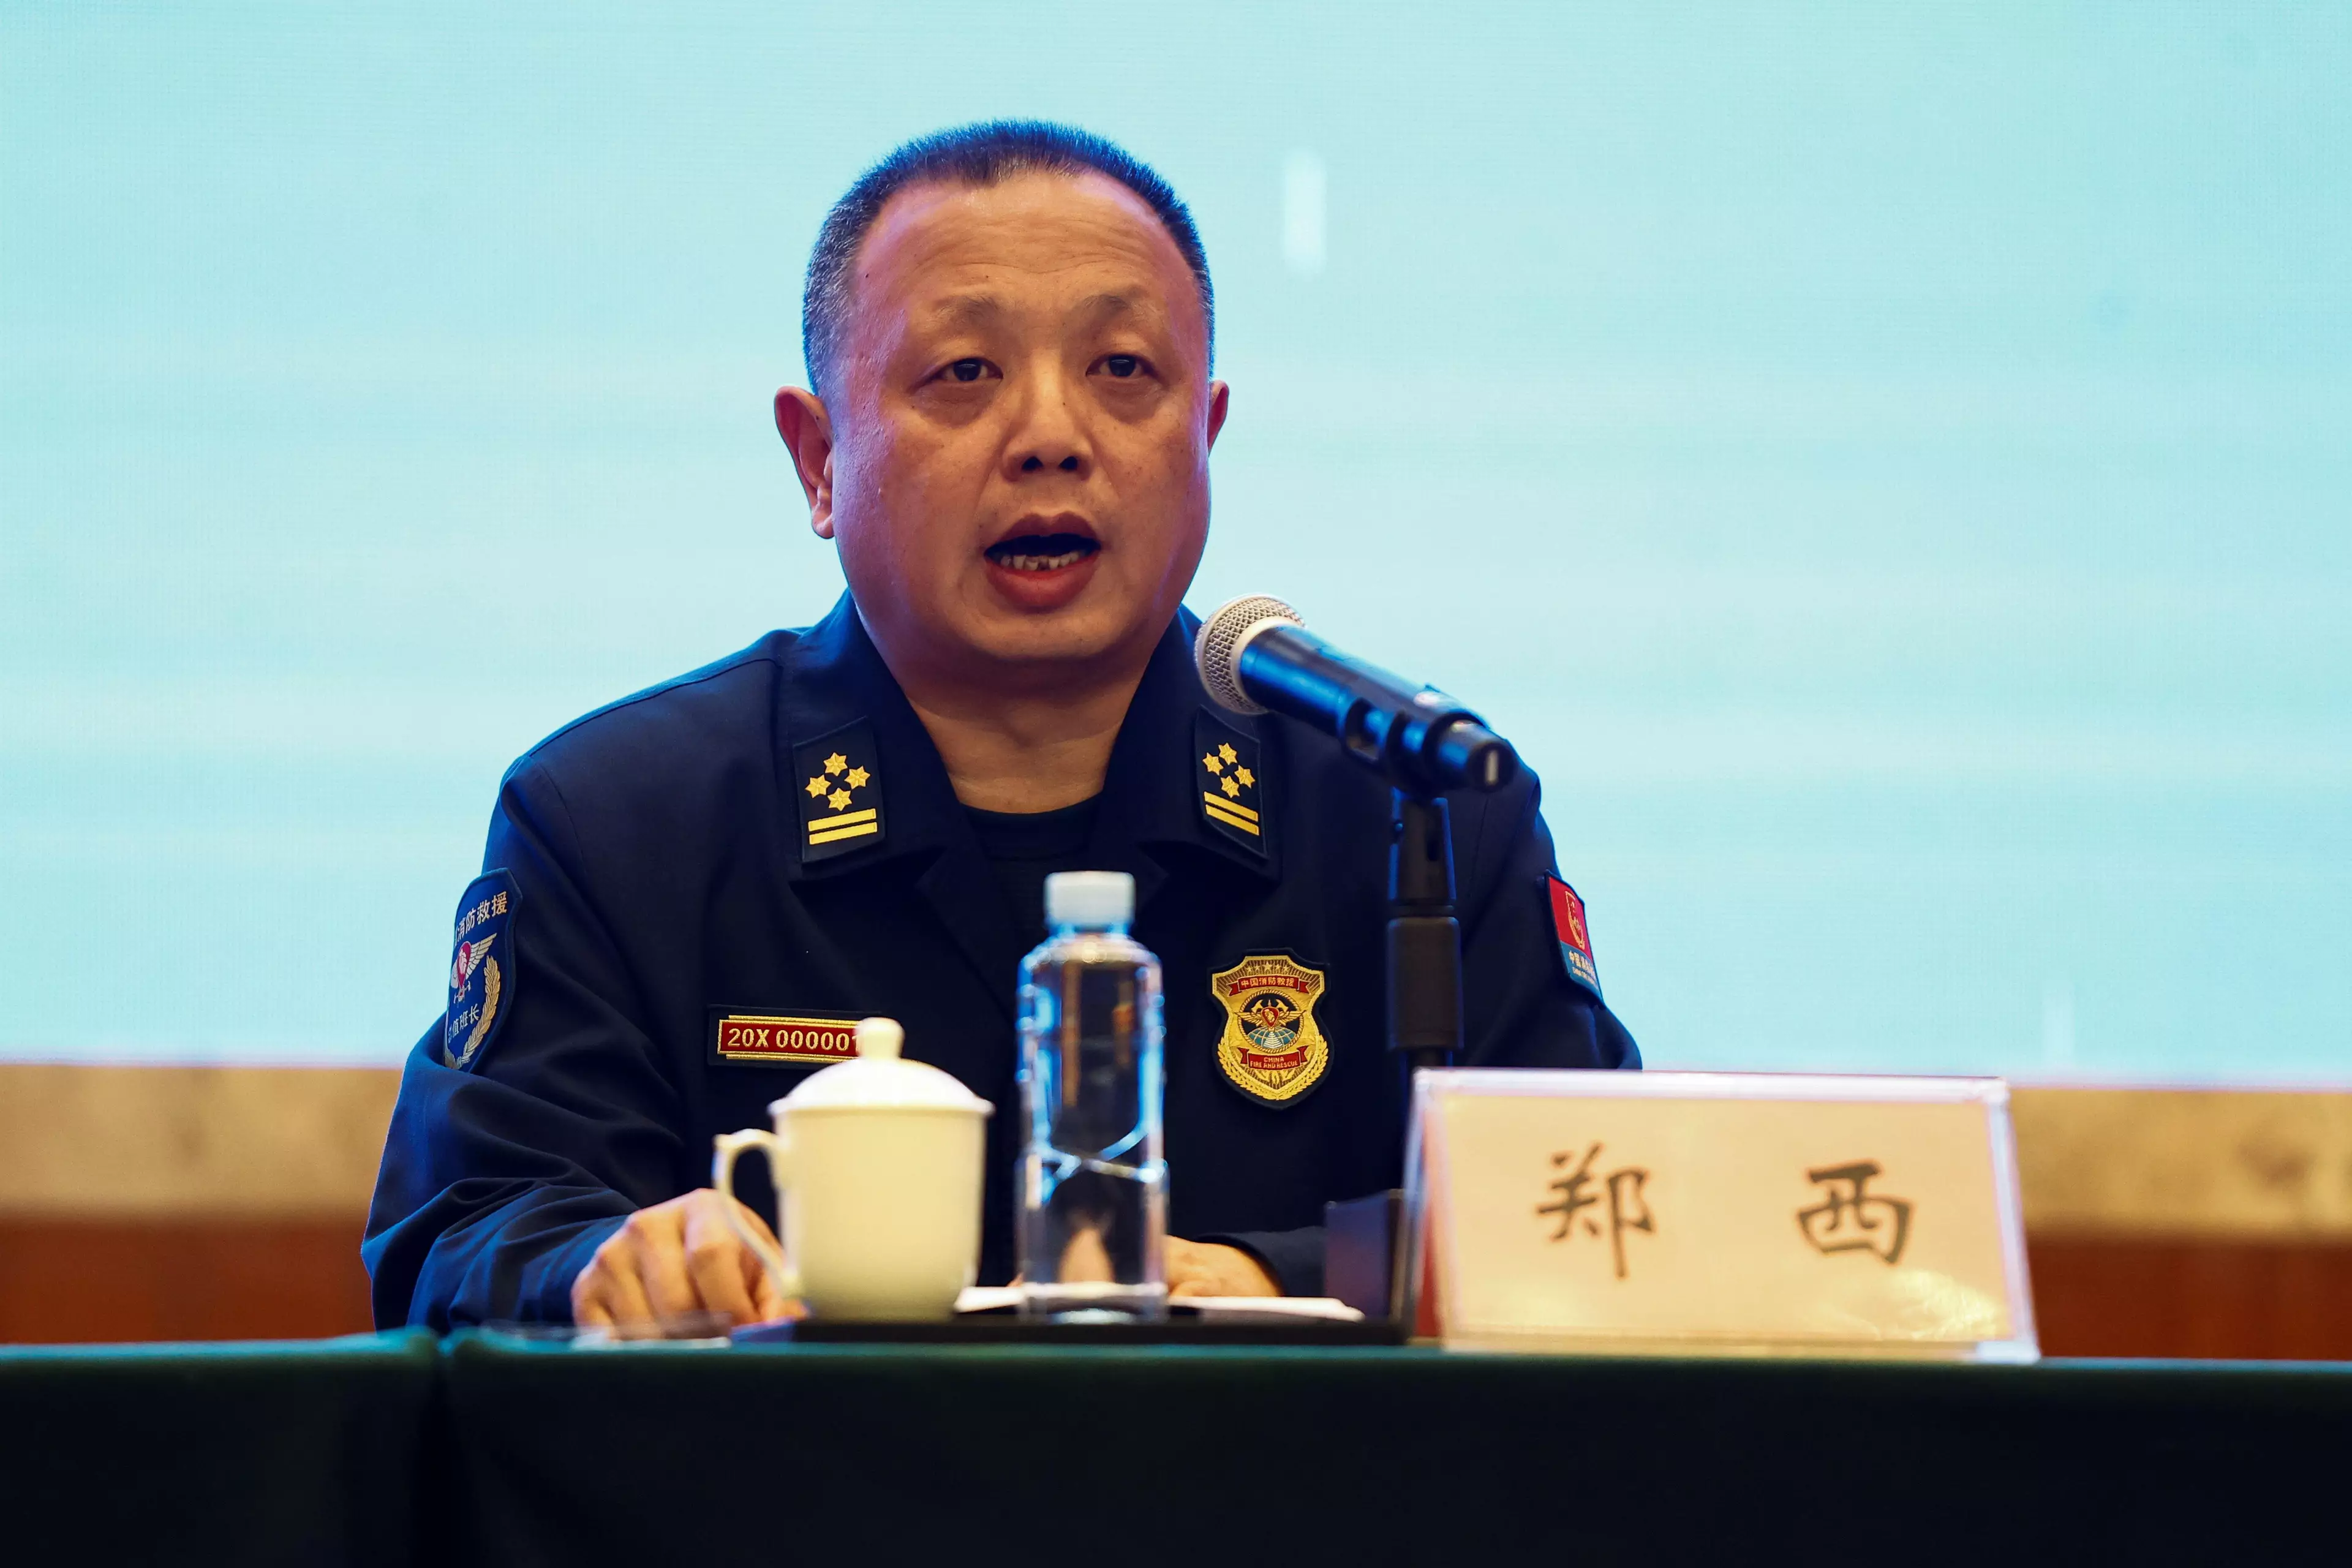 Zheng Xi, head of the Guangxi fire-fighting rescue team.